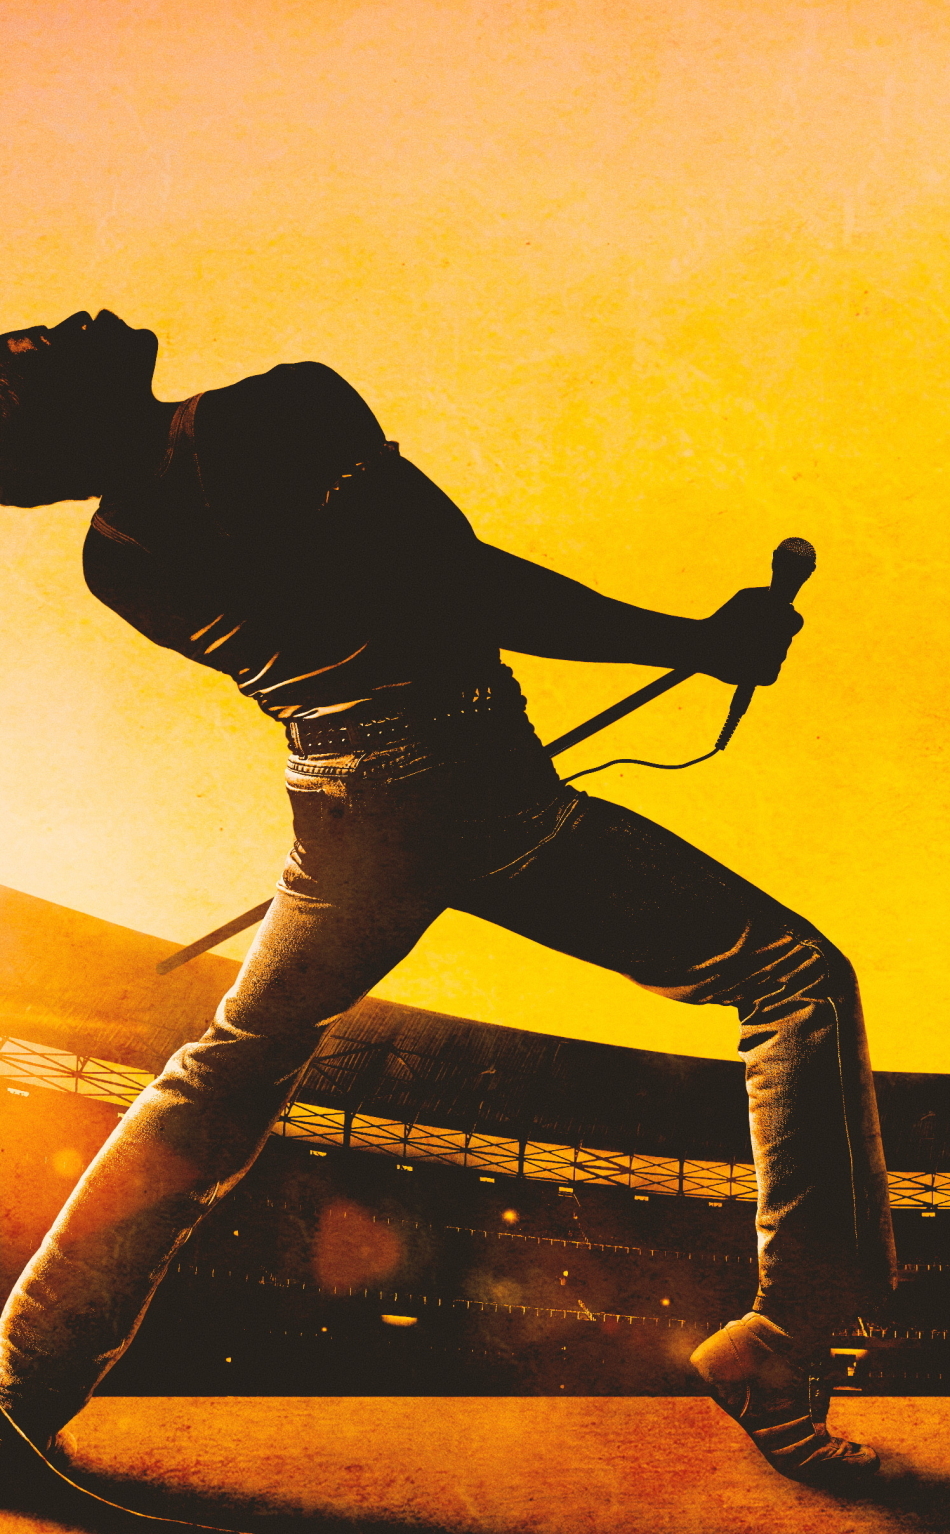 Bohemian Rhapsody 2018 Movie Fan Poster, HD 4K Wallpaper